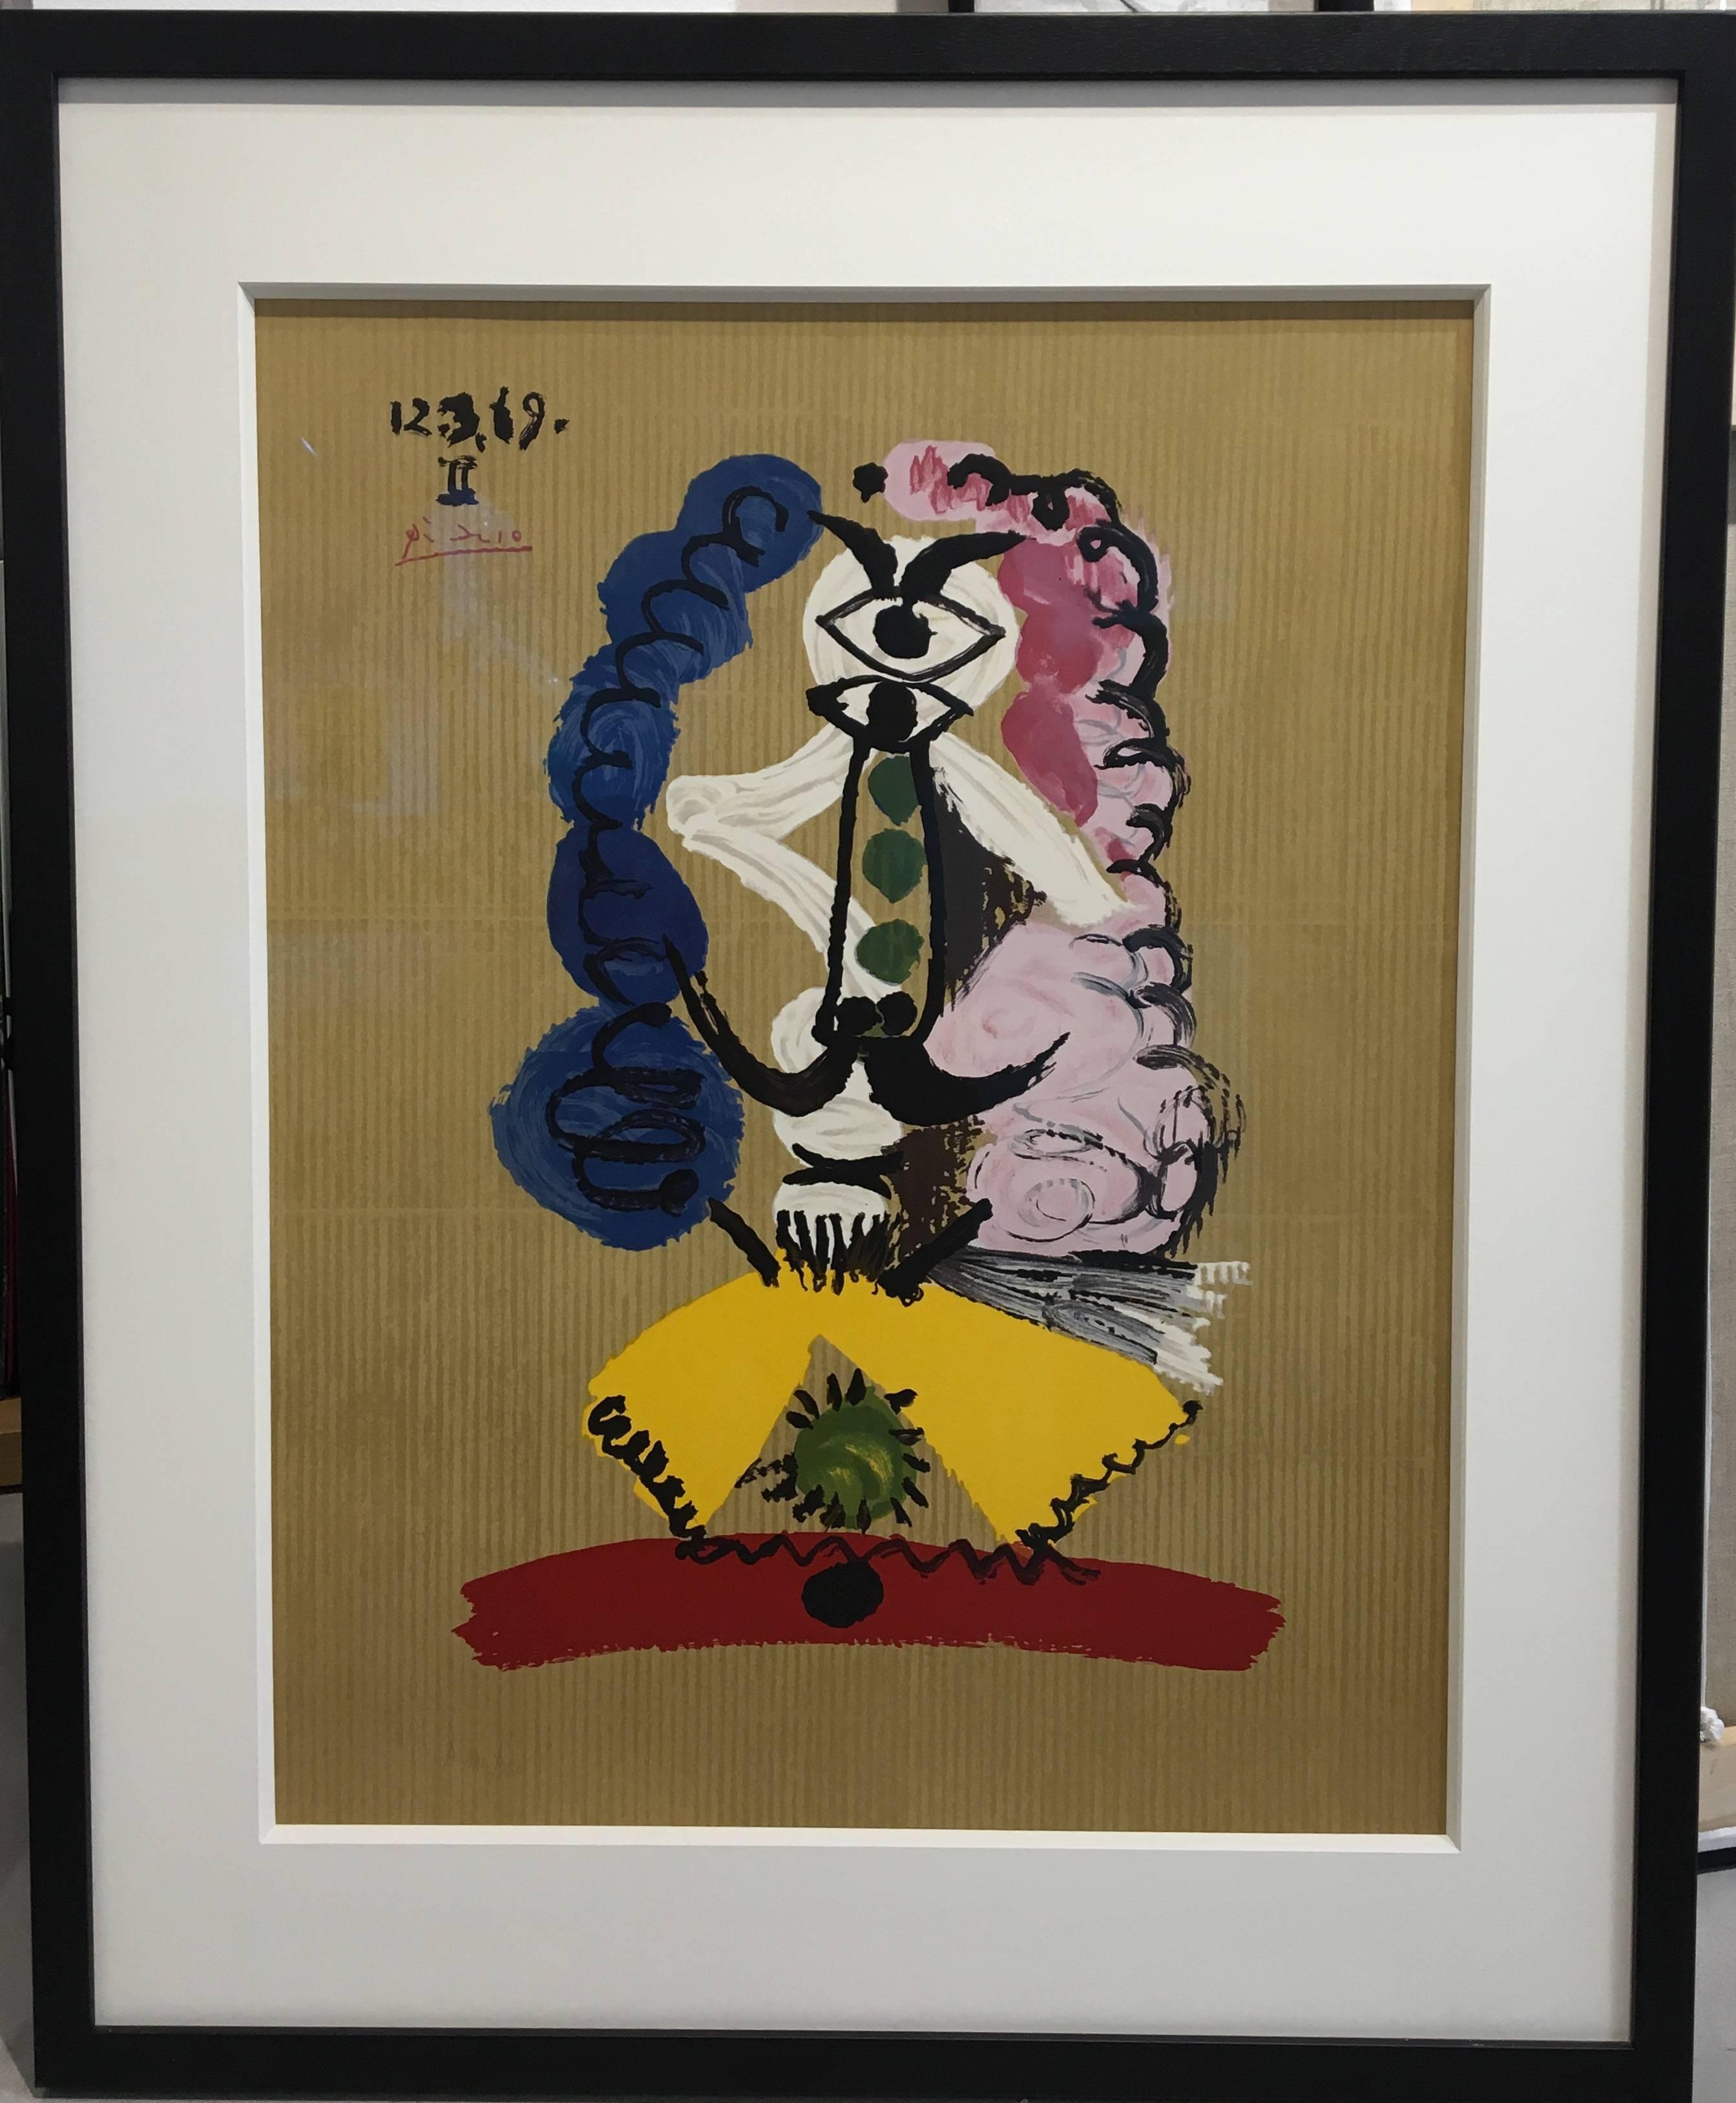 Figurative Print Pablo Picasso - 12.3.69 - II